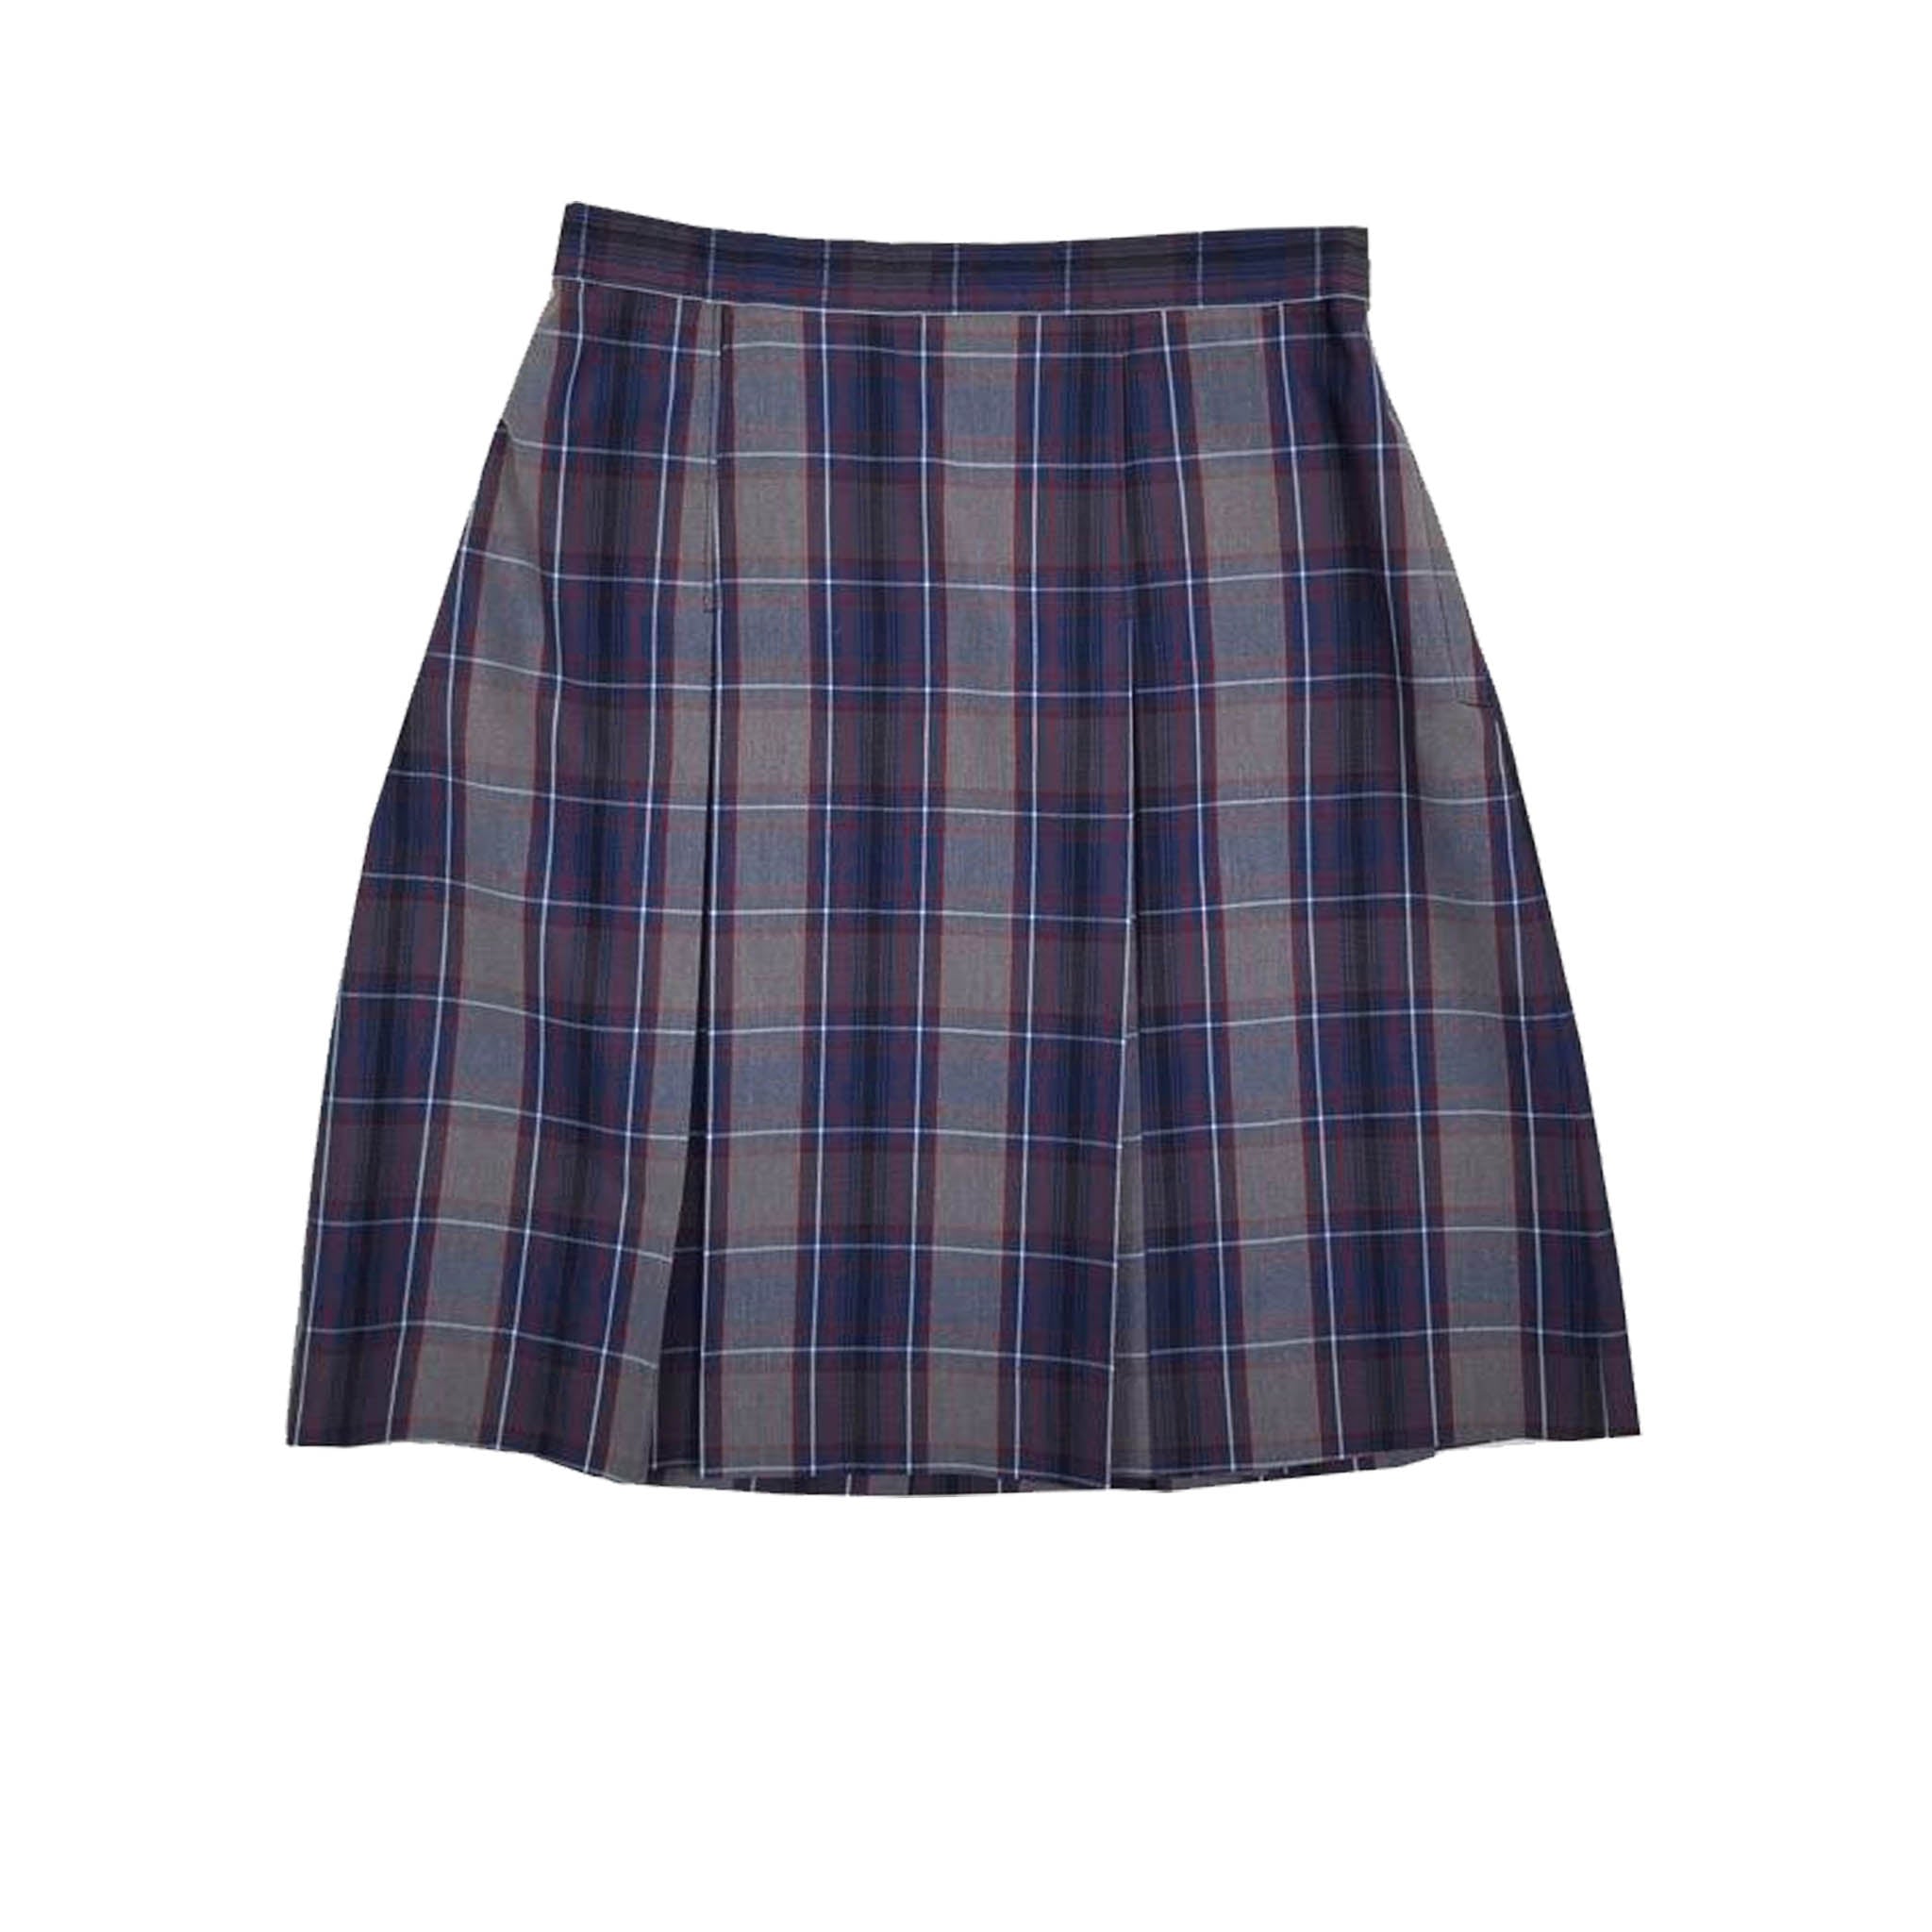 WOF Plaid Skirt